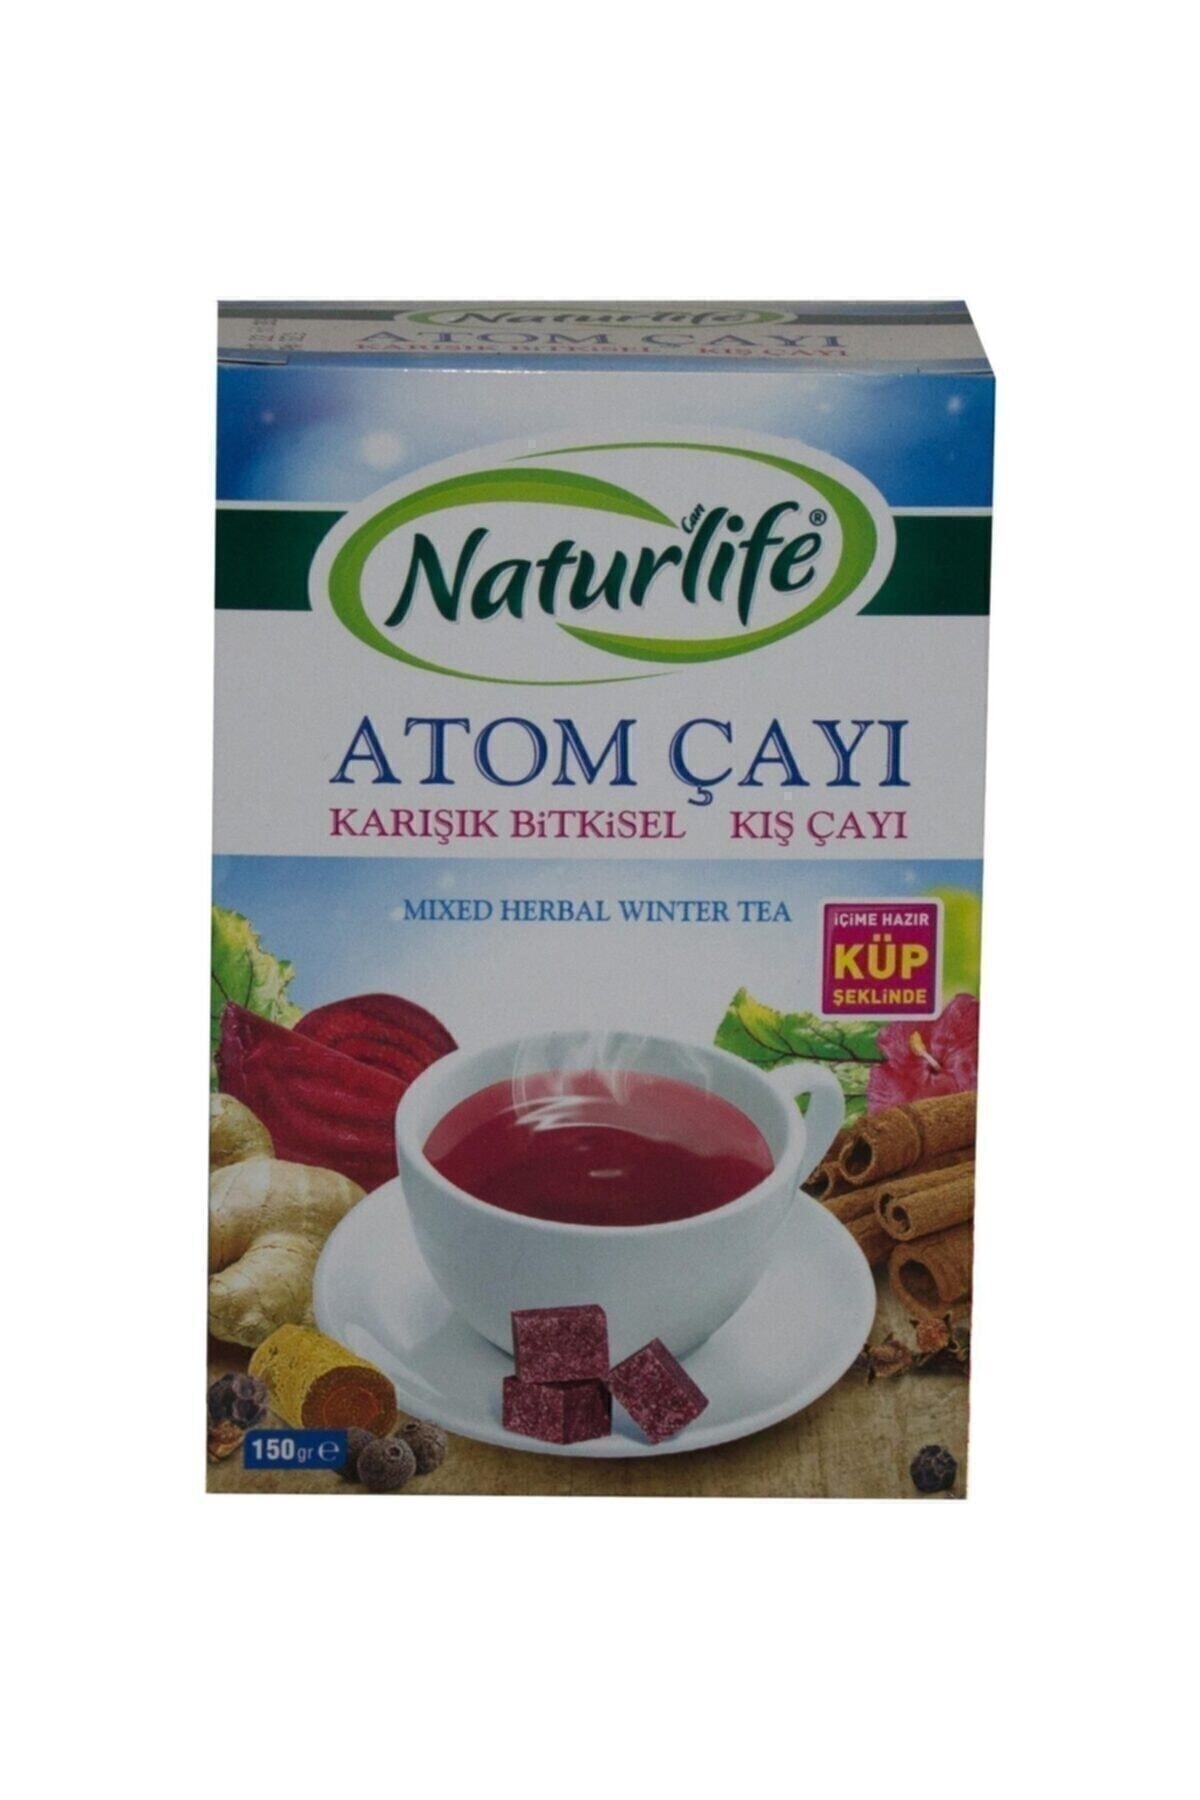 Can Naturlife Naturlife Atom Çayı 150 gr Küp Şeklinde Karışık Bitkisel Kış Çayı Içime Hazır